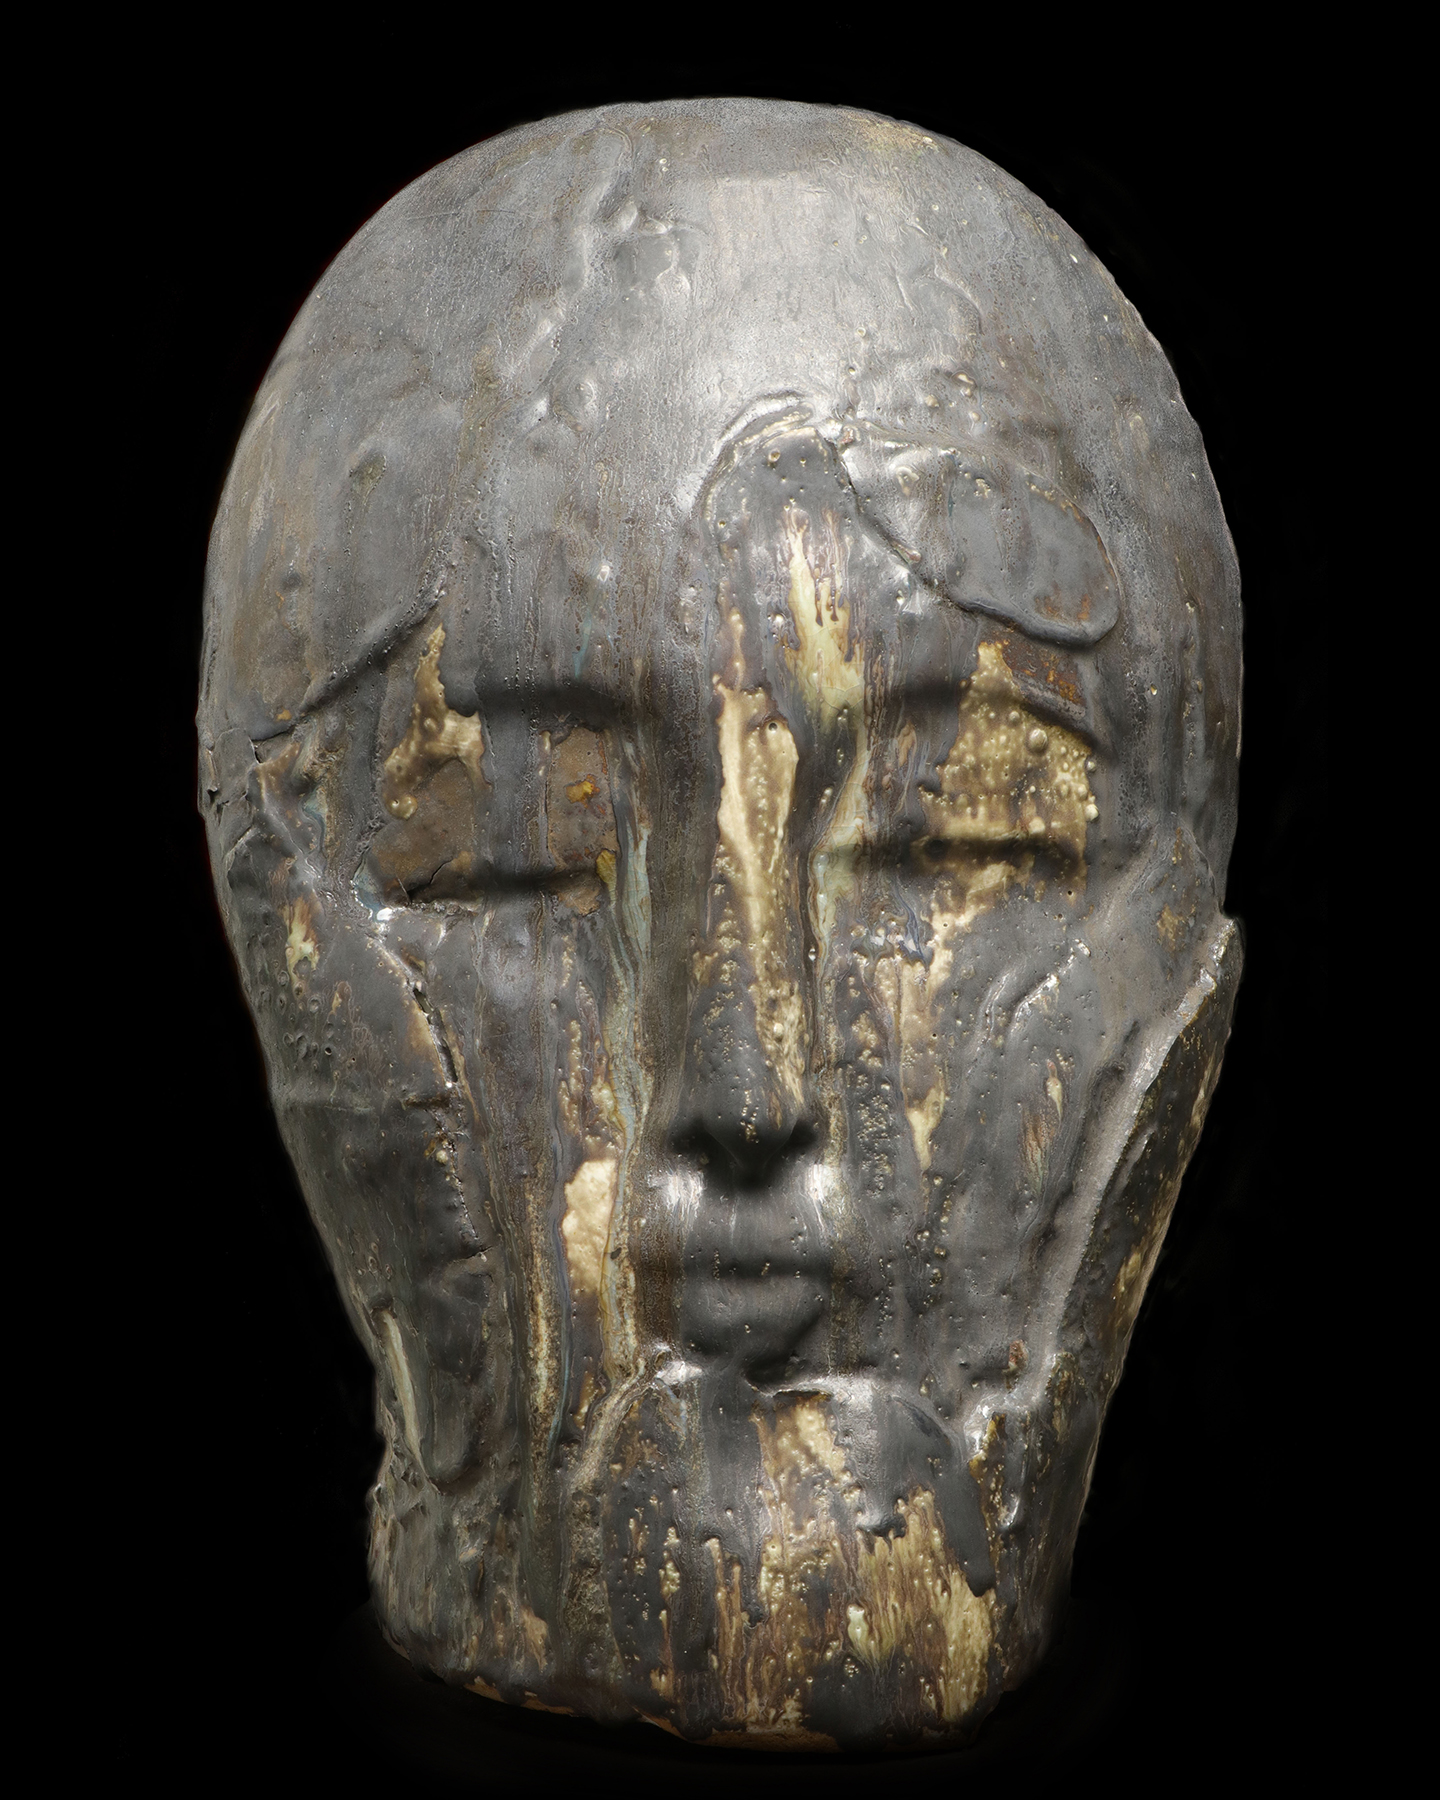 Nicolas-Pierre Réveillard, sculpture "By our abysses" - "Par nos abîmes" (1)